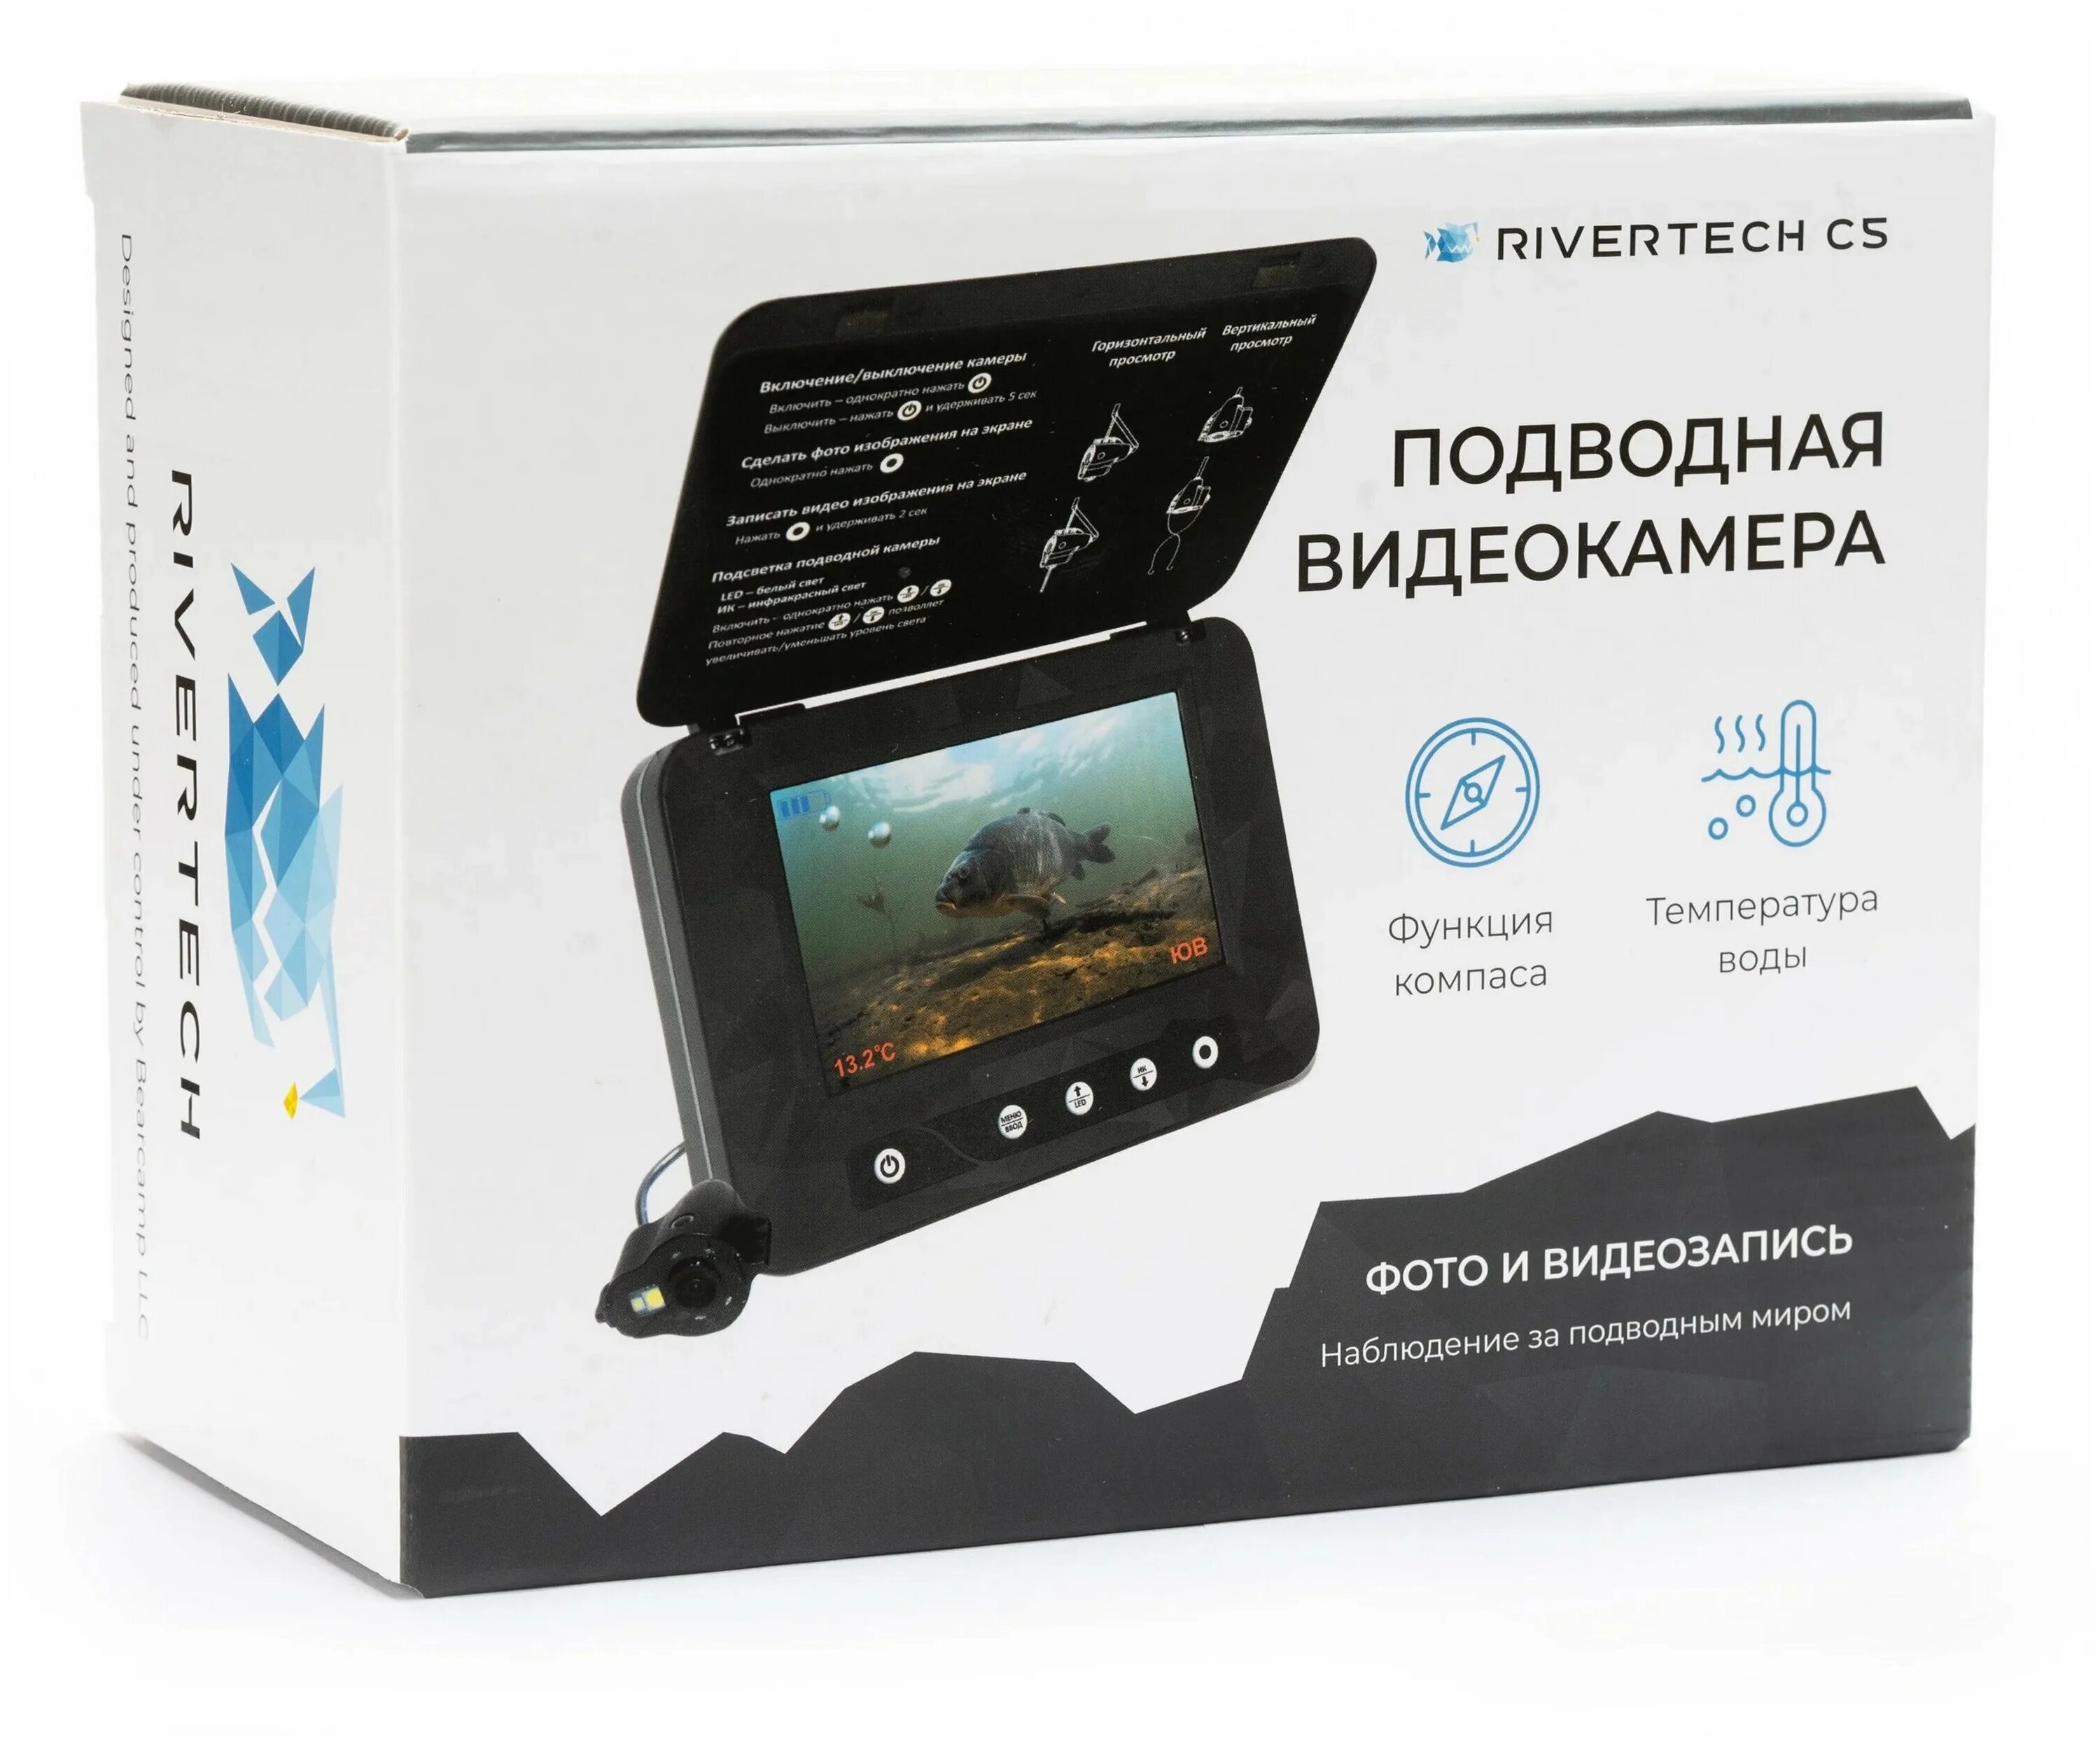 Ривертек. Подводная видеокамера Rivertech c5. Подводная камера для рыбалки РИВЕРТЕХ. Подводная камера фишка 350. Подводные камеры для рыбалки характеристики и цены.